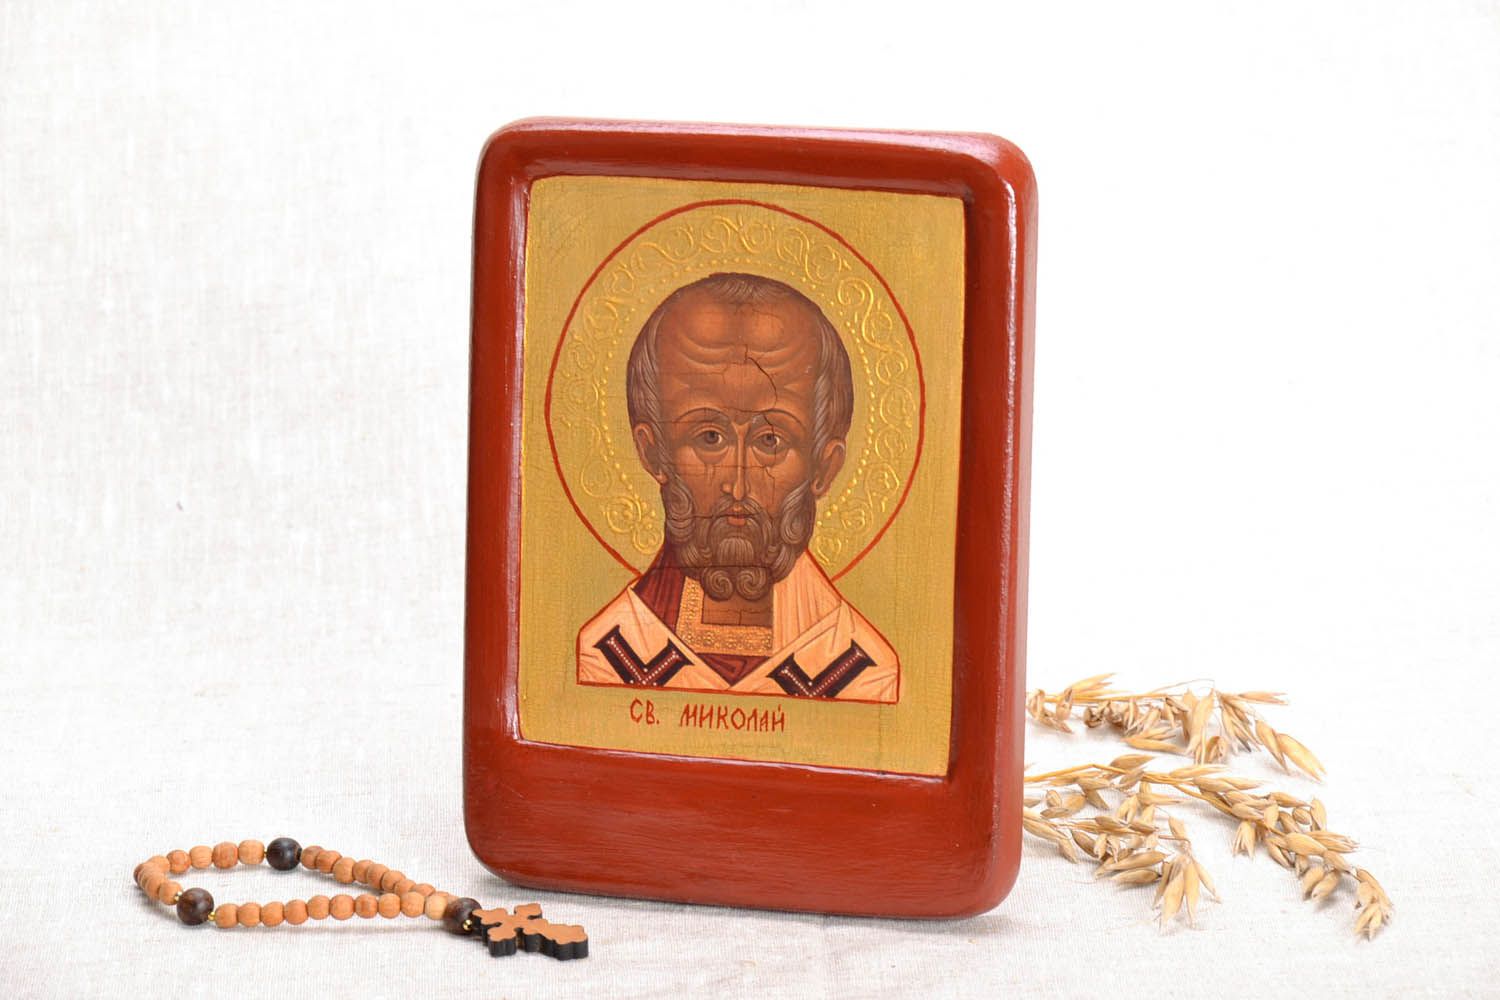 Репродукция иконы святого Николая фото 1